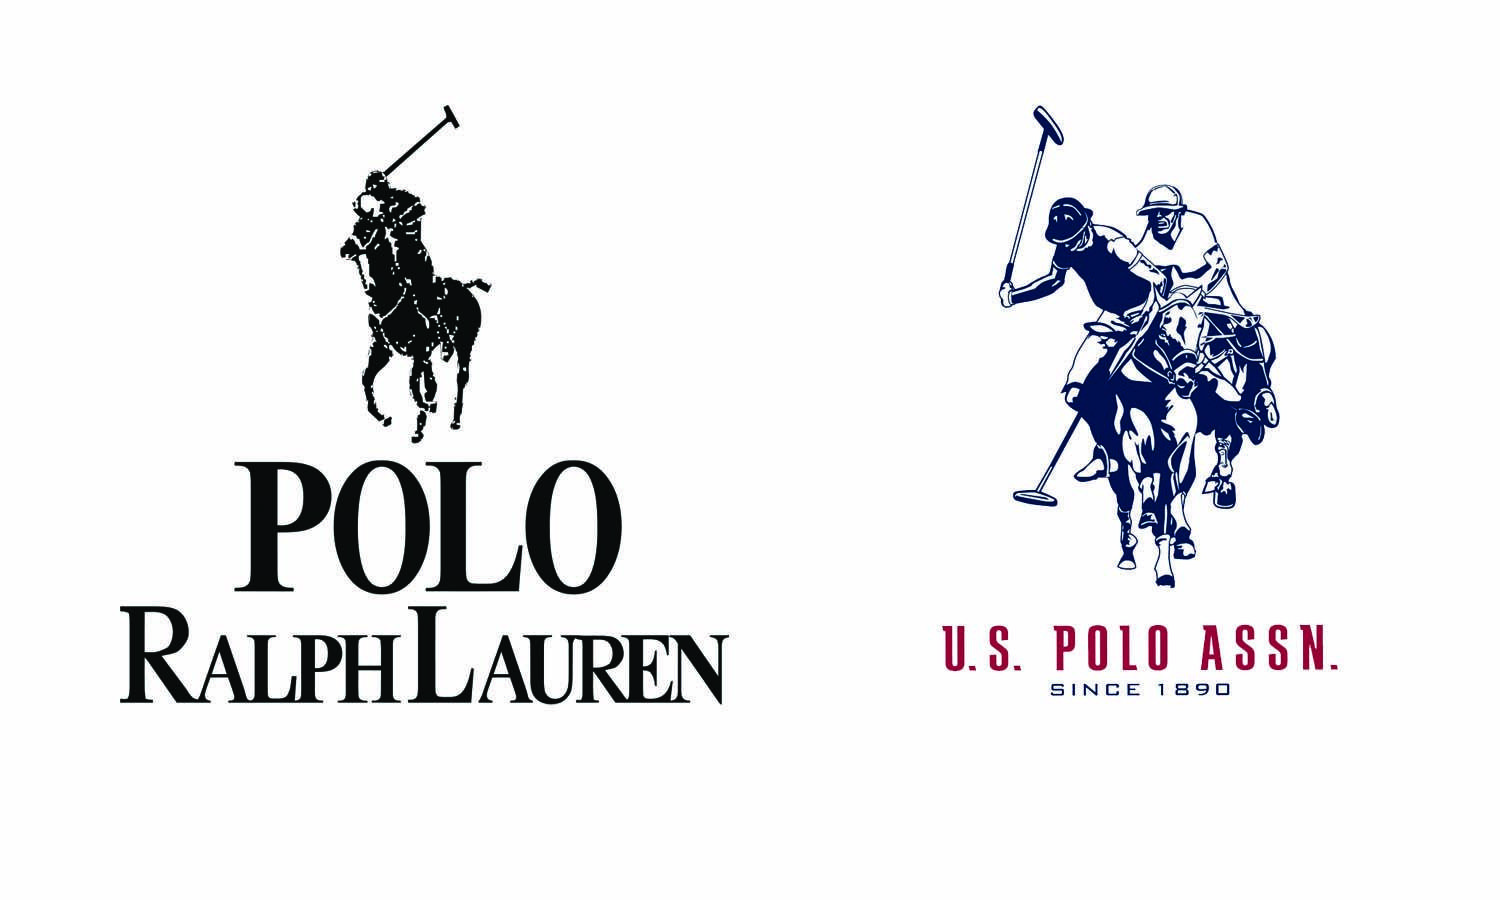 Ralph Lauren Polo Logo - ralph lauren polo logo transparent background ralph lauren polo logo ...